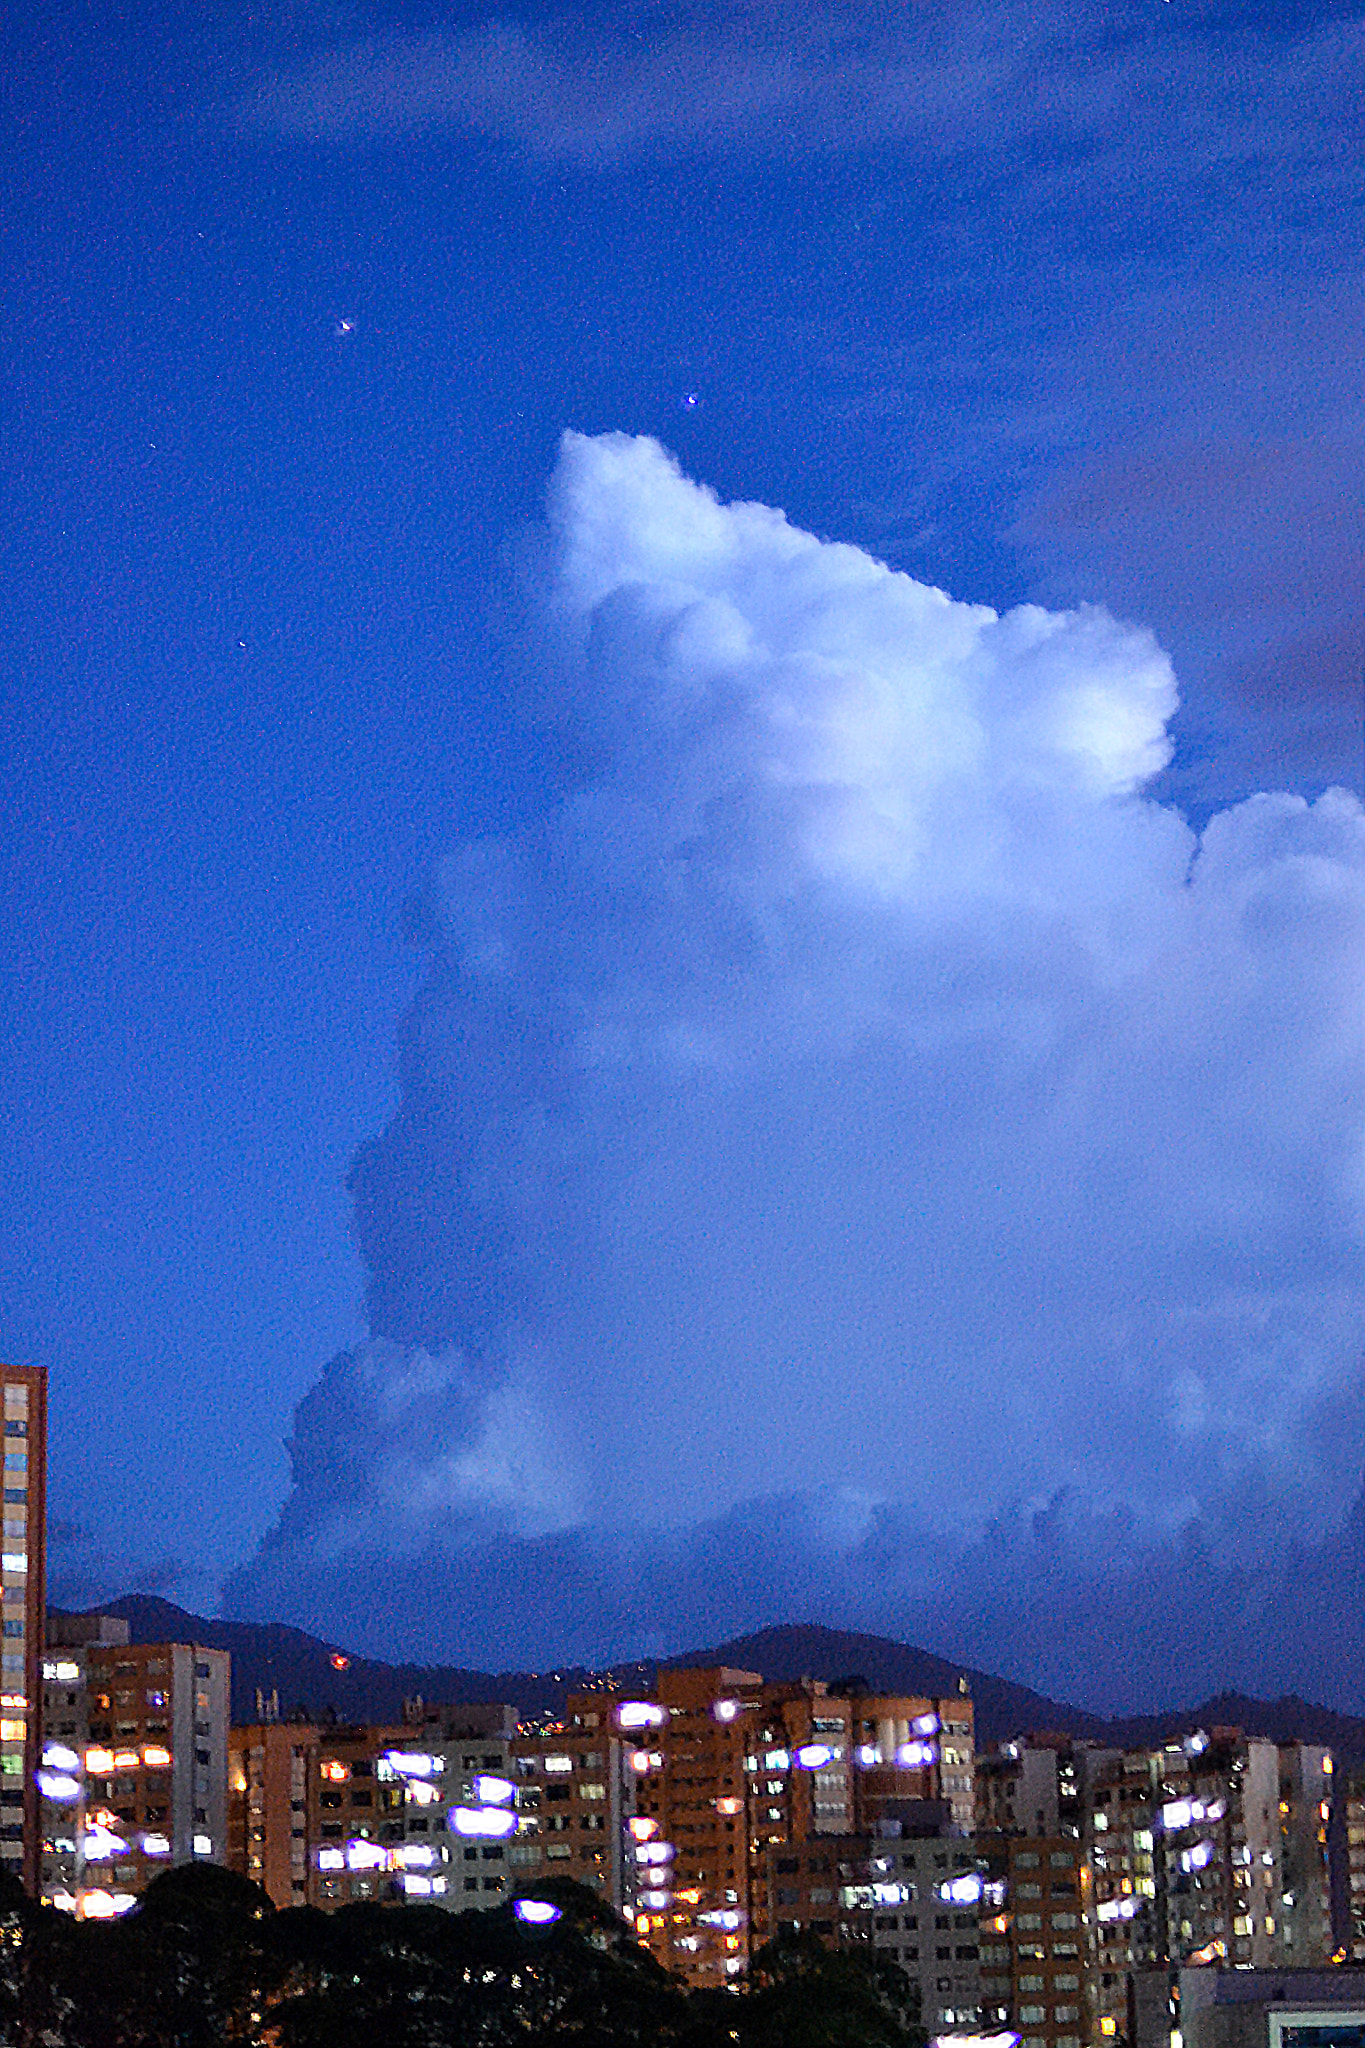 Nikon D3100 + Nikon AF Nikkor 50mm F1.4D sample photo. Medellín, colombia - clouds & planets at dusk photography